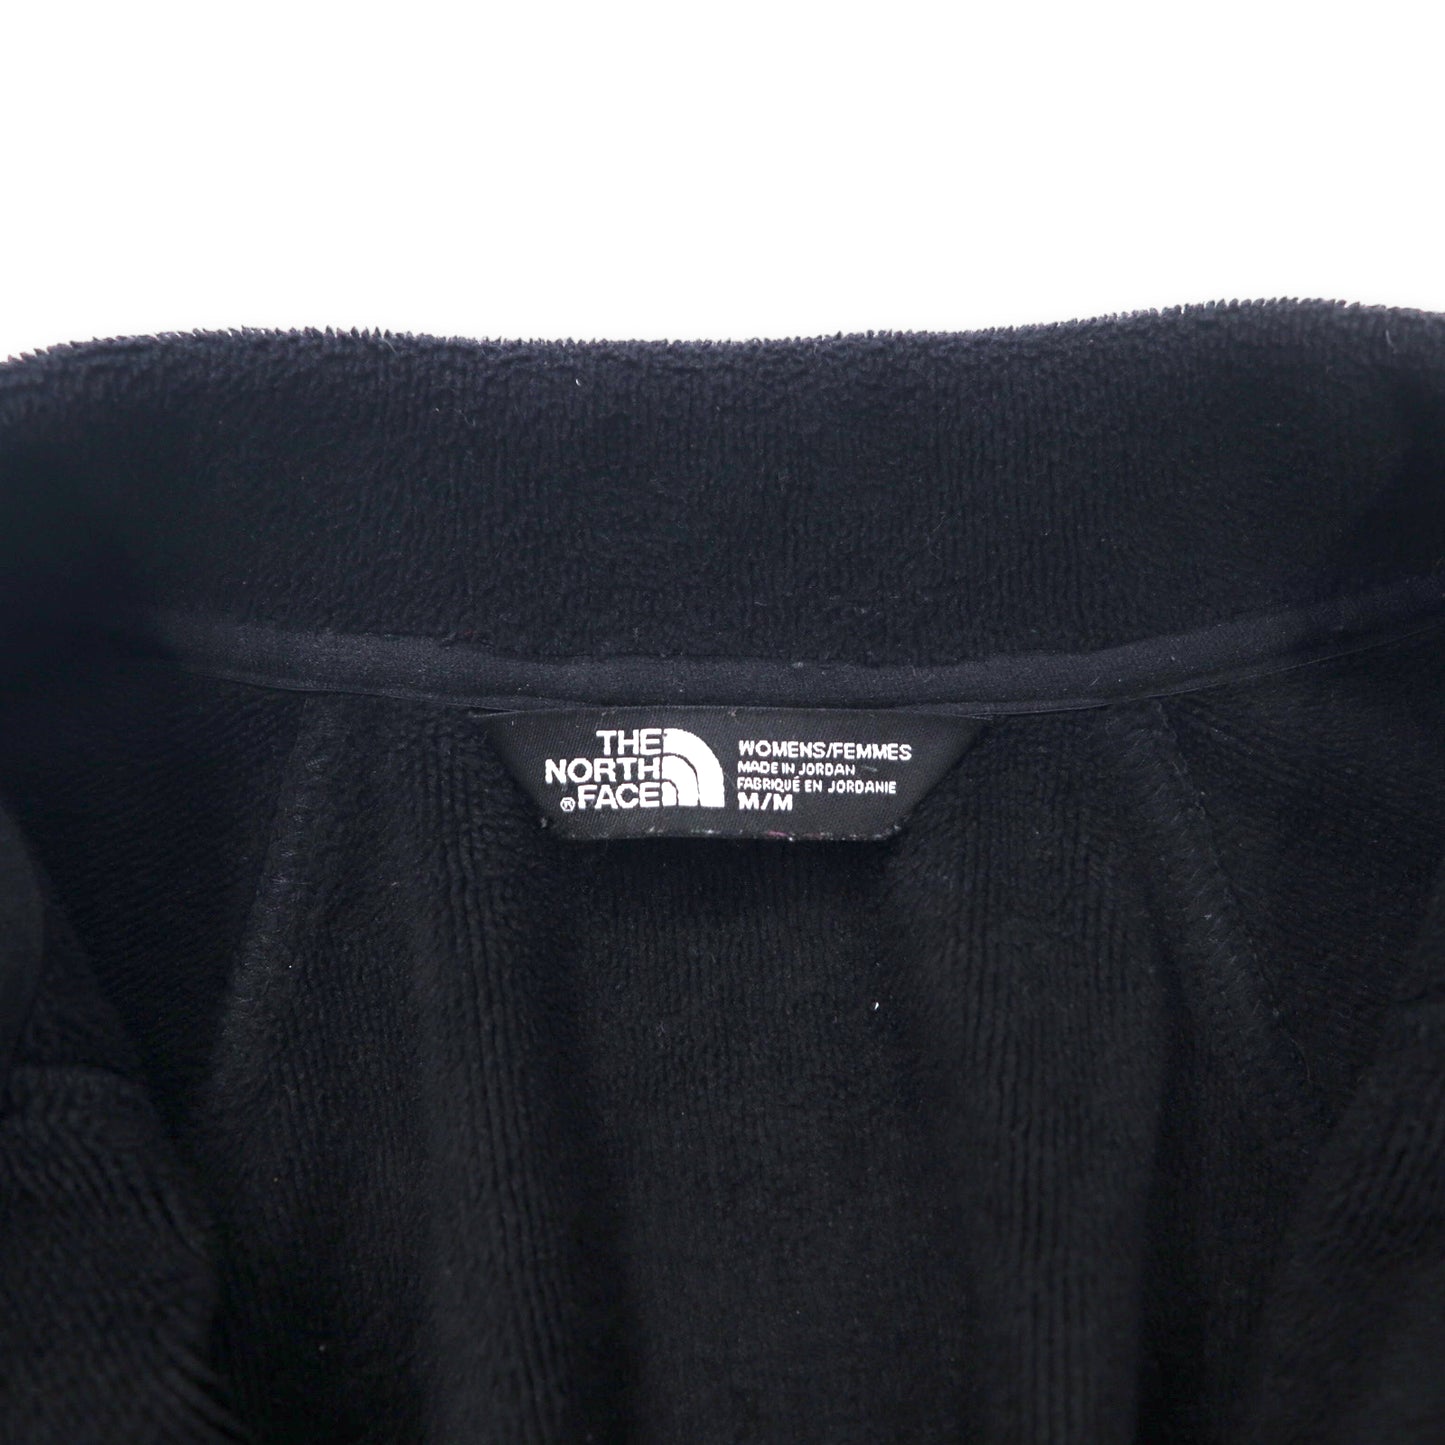 THE NORTH FACE フリースライニングジャケット M ブラック ポリエステル AGAVE FULL ZIP FLEECE JACKET NF0A2RDG